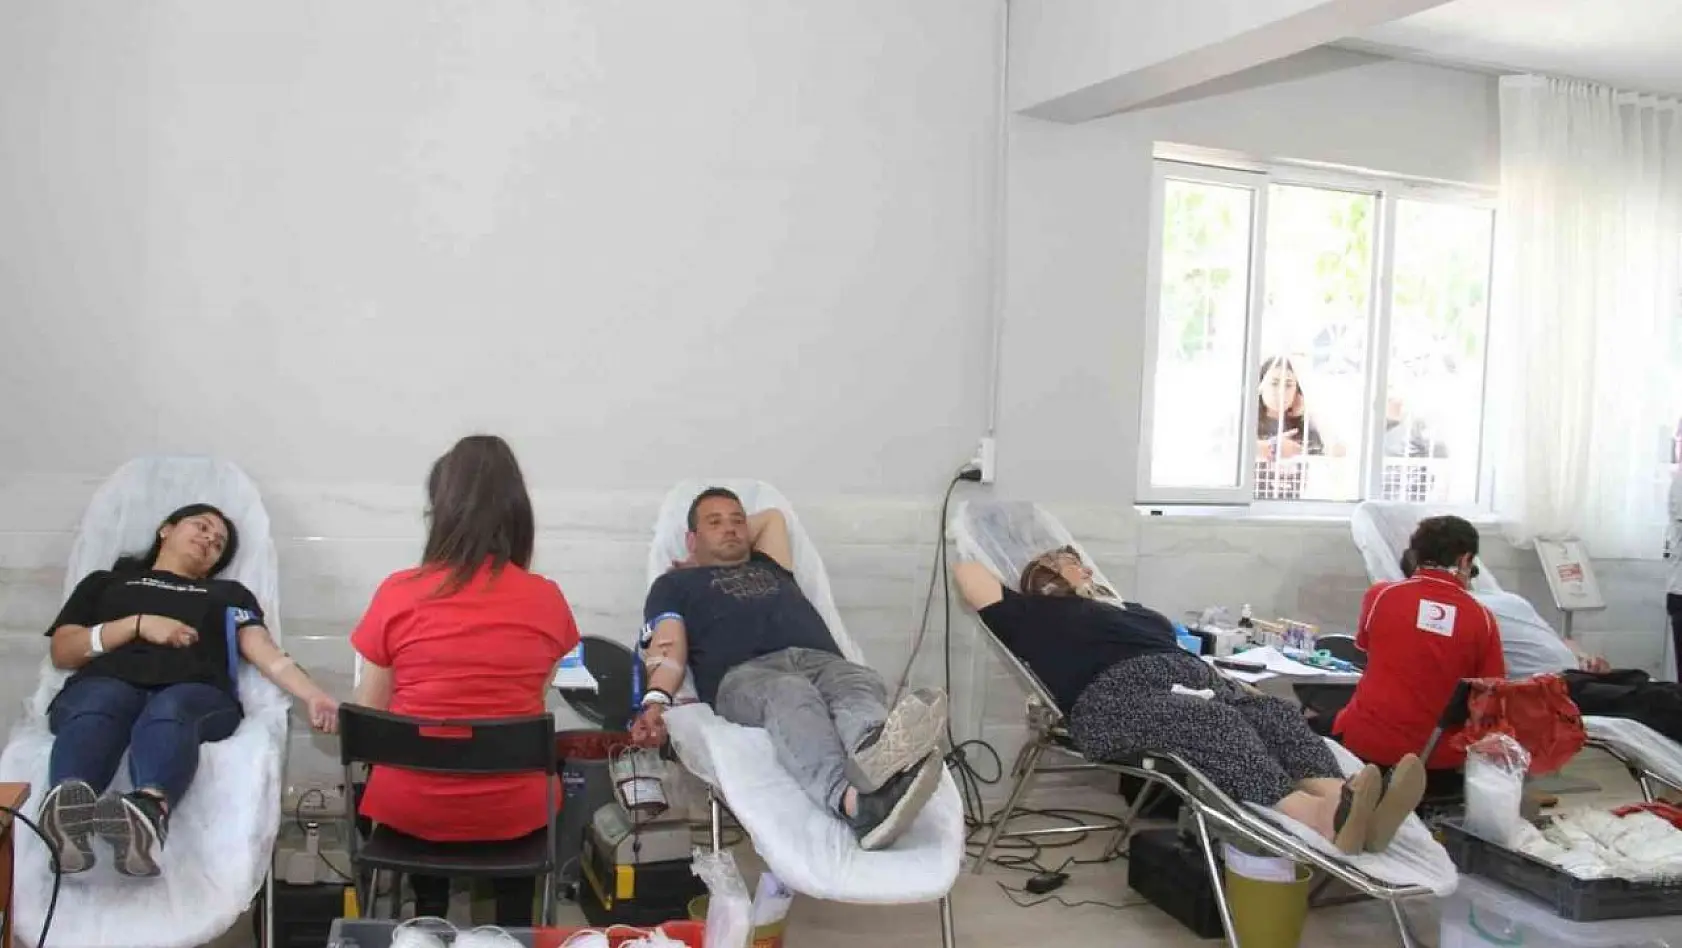 Bilim Fuarı Şenliği'nde vatandaşlardan kan bağışına yoğun ilgi